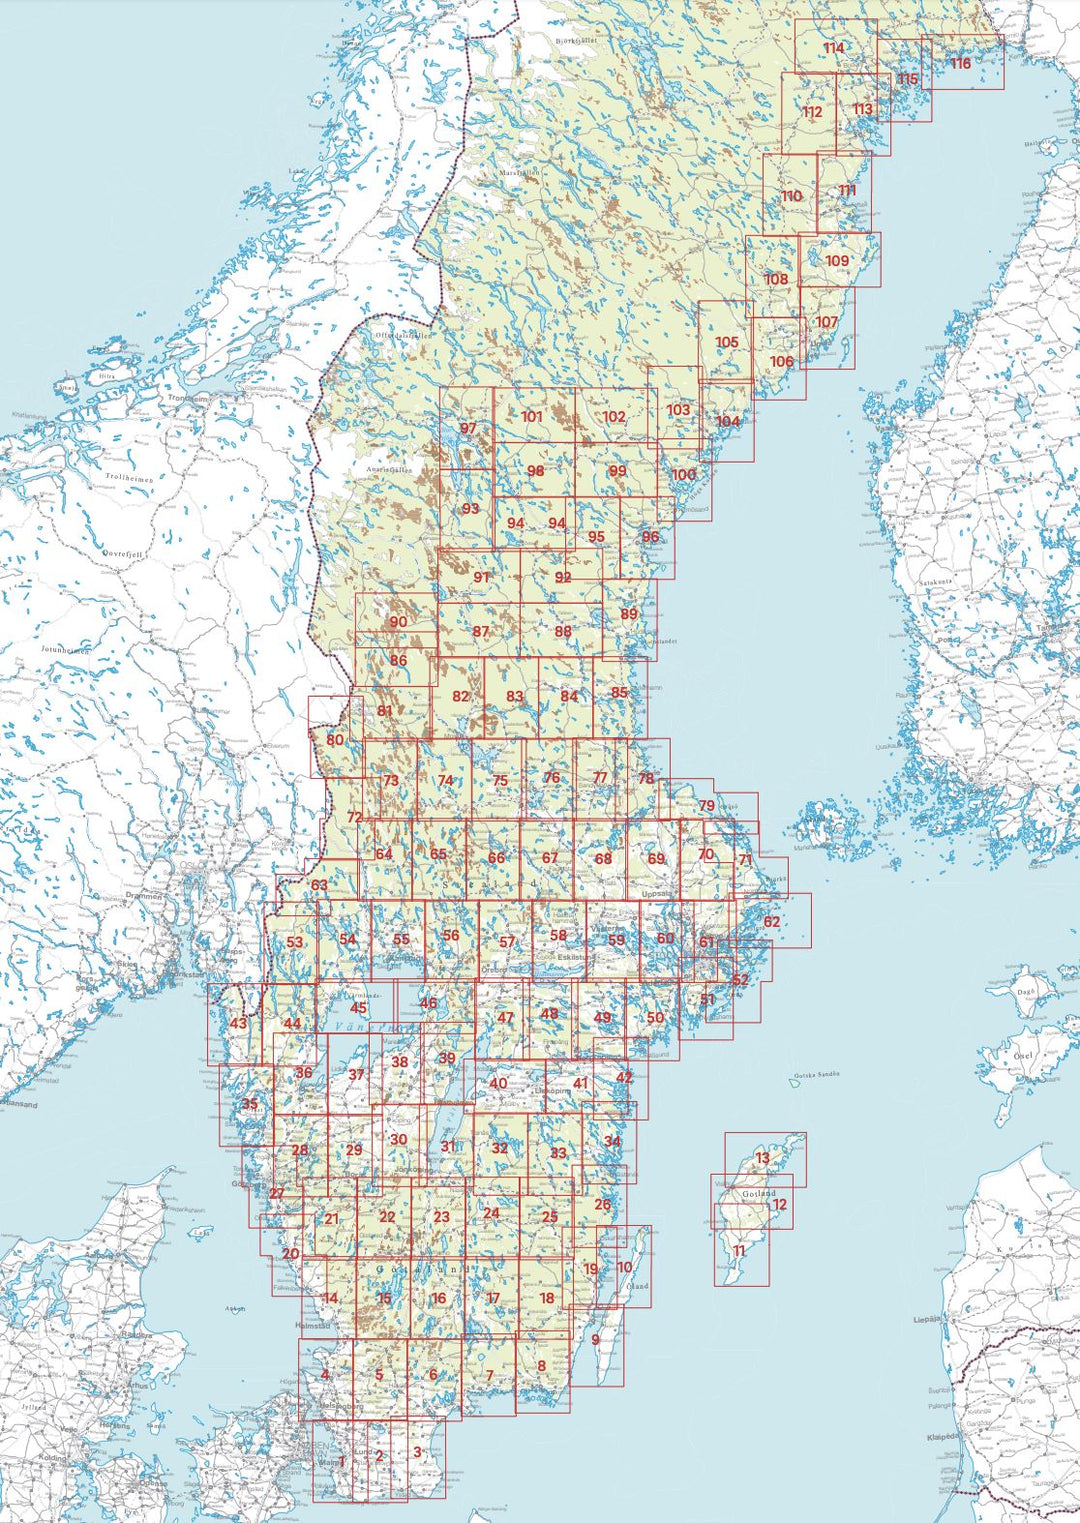 Carte topographique n° 48 - Finspång (Suède) | Norstedts - Sverigeserien carte pliée Norstedts 